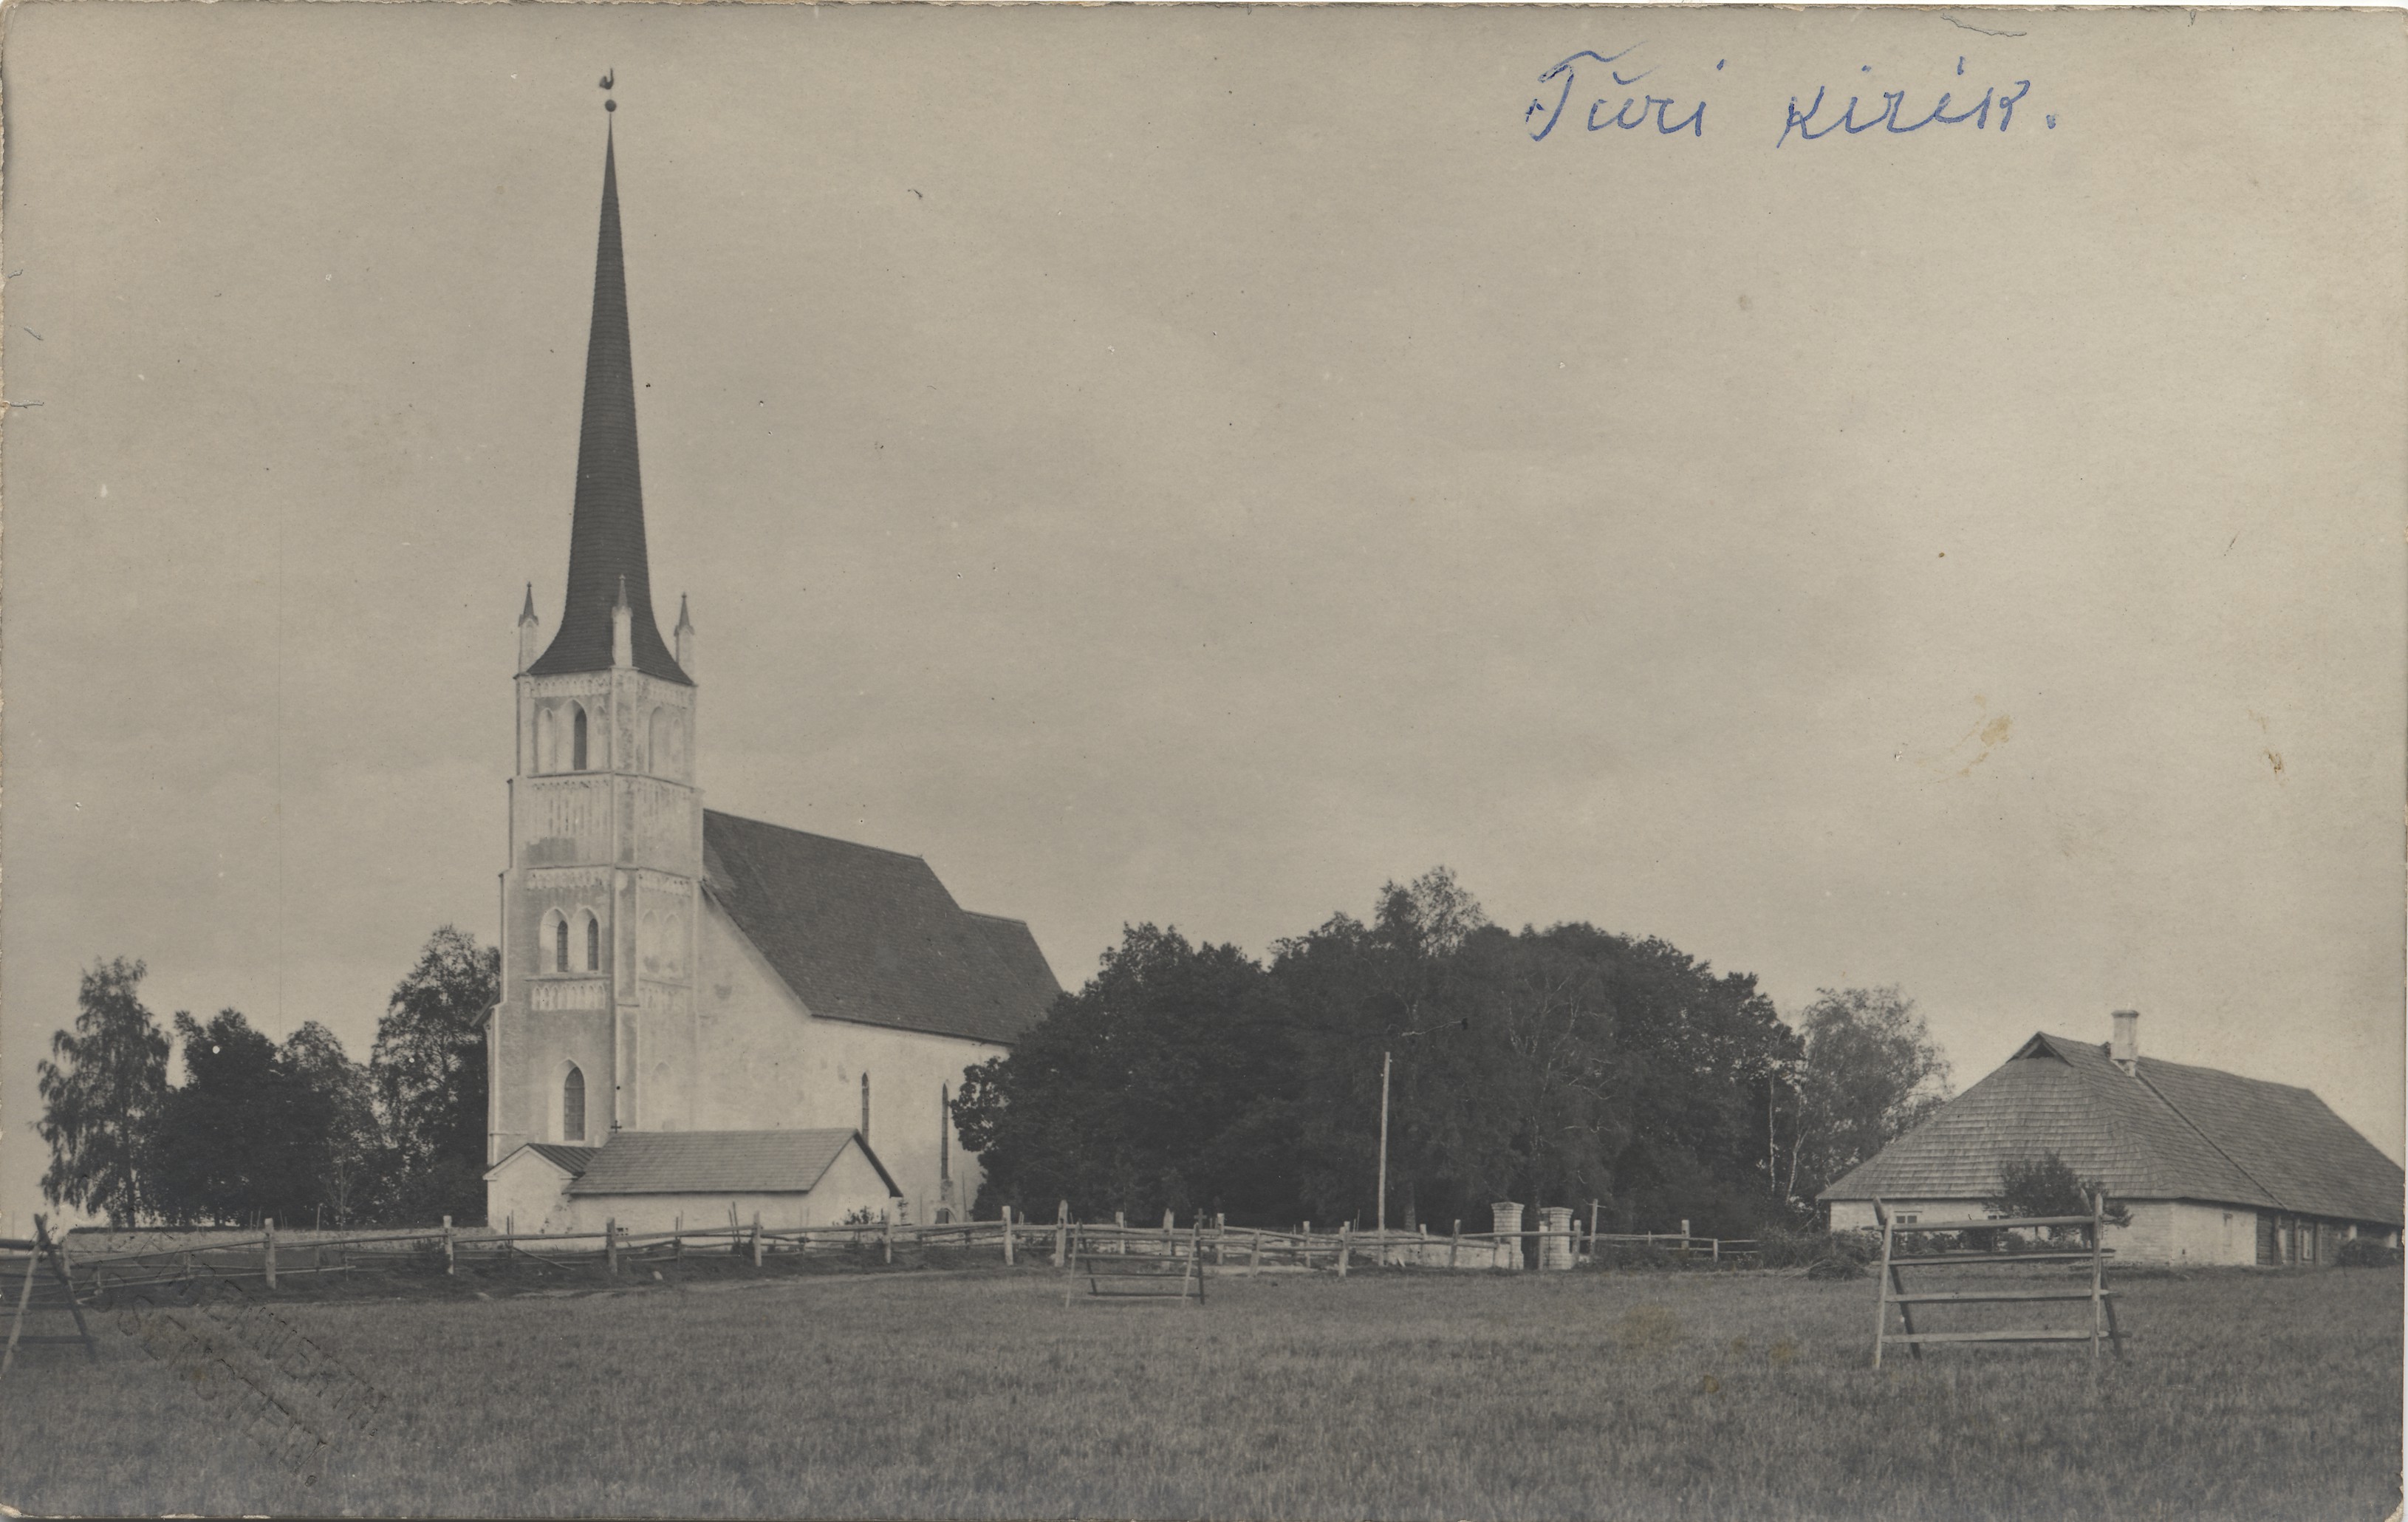 Türi Church